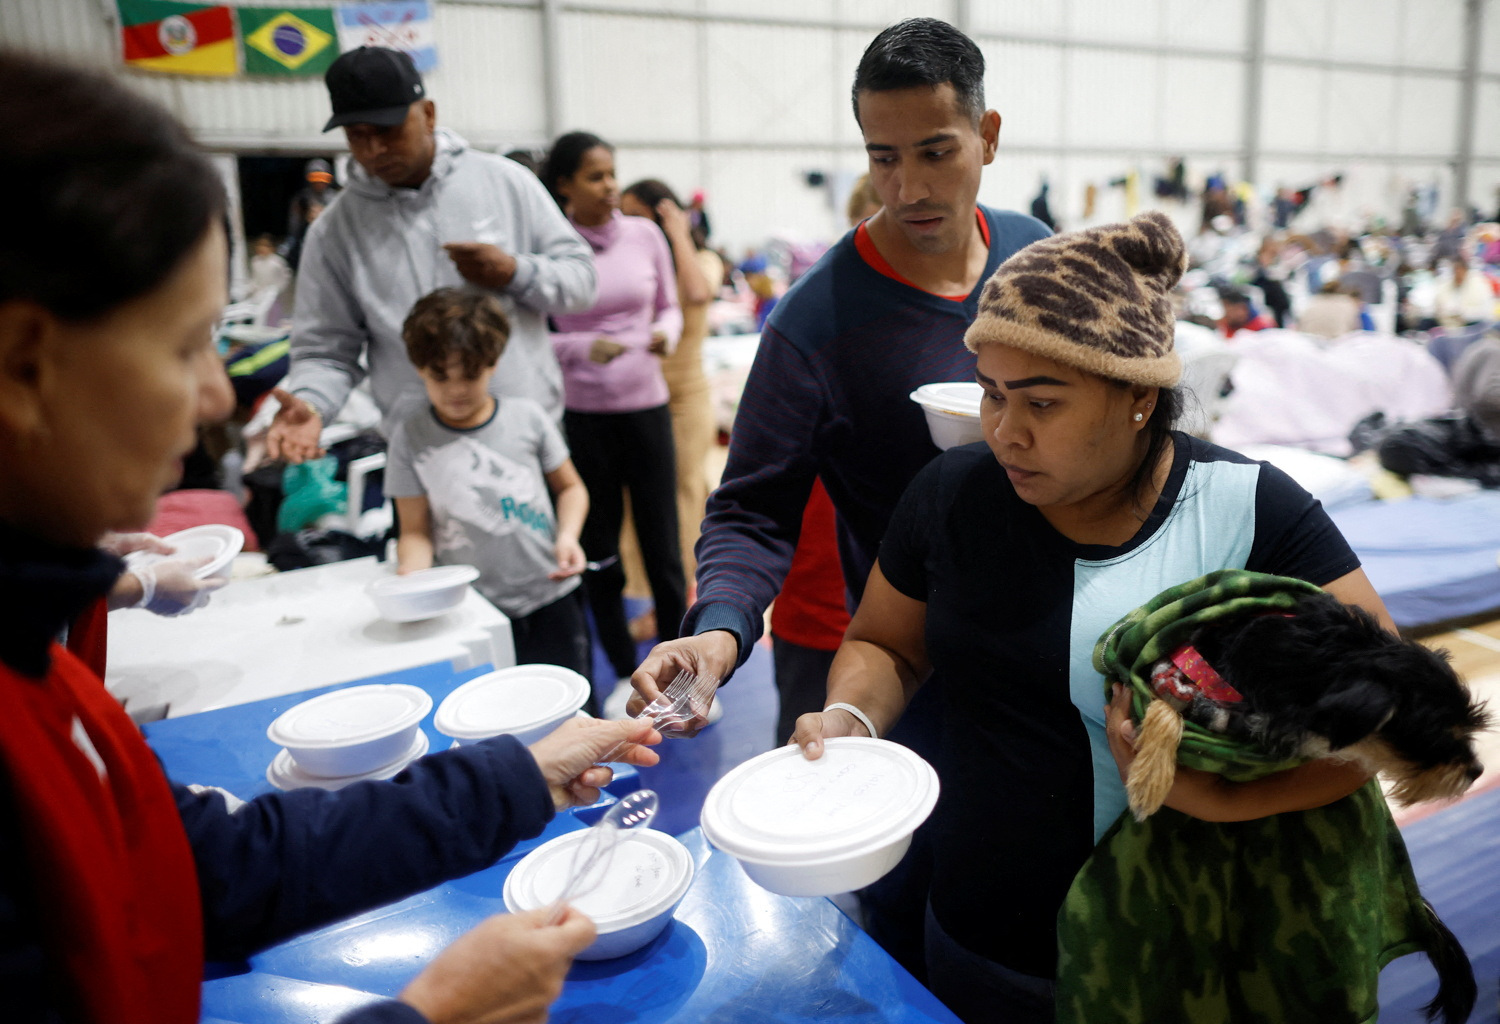 Refugiados venezuelanos Carina Gonzales e Xavier Velasquez recebem comida de um voluntário em abrigo em Porto Alegre depois que a casa onde viviam foi destruída pelas enchentes no estado (REUTERS/Adriano Machado)